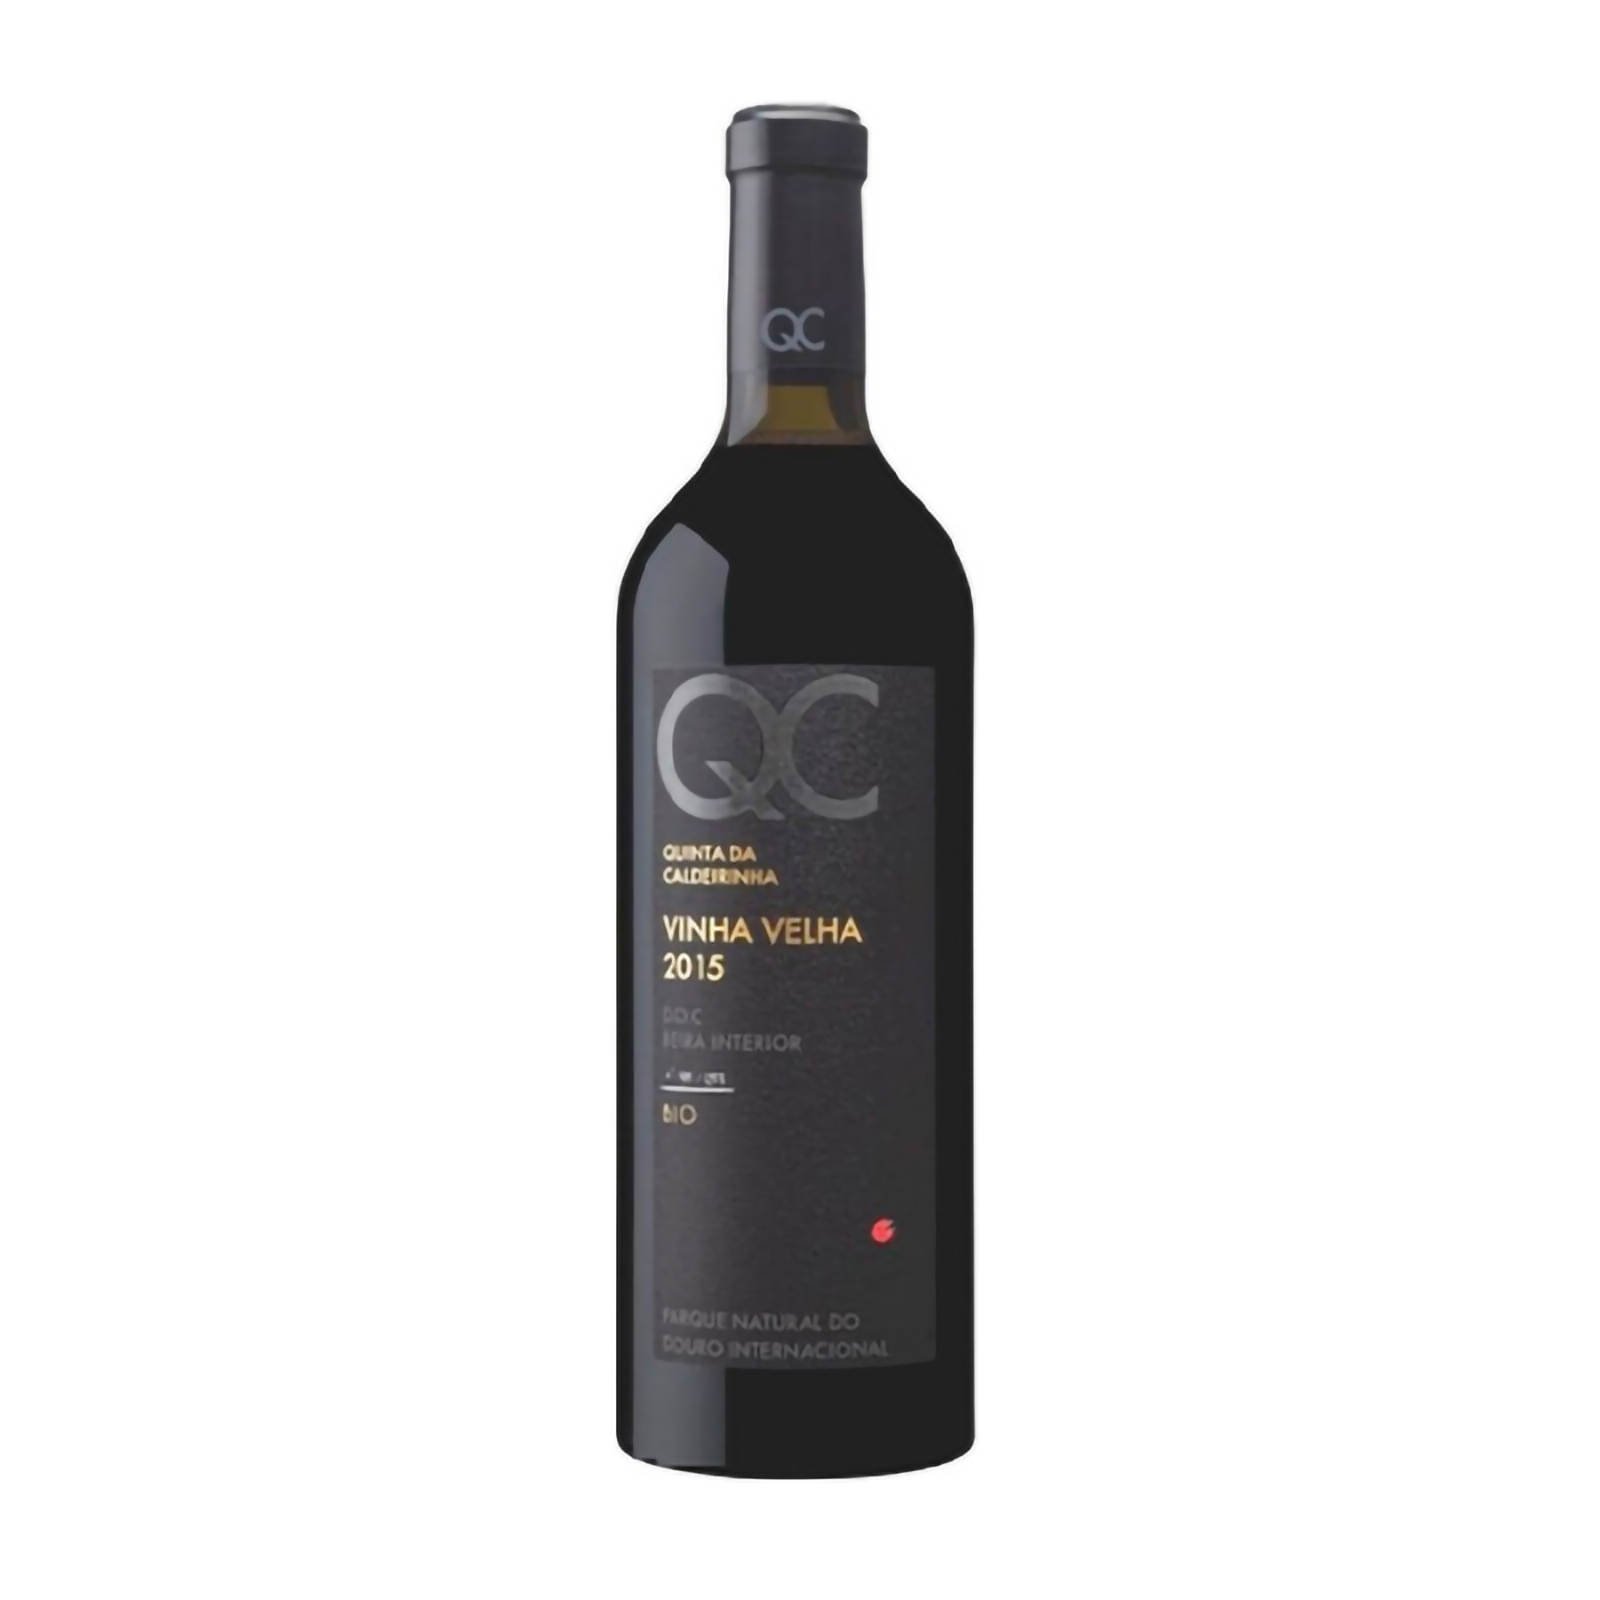 Quinta da Caldeirinha QC Old Vines Bio Tinto 2015